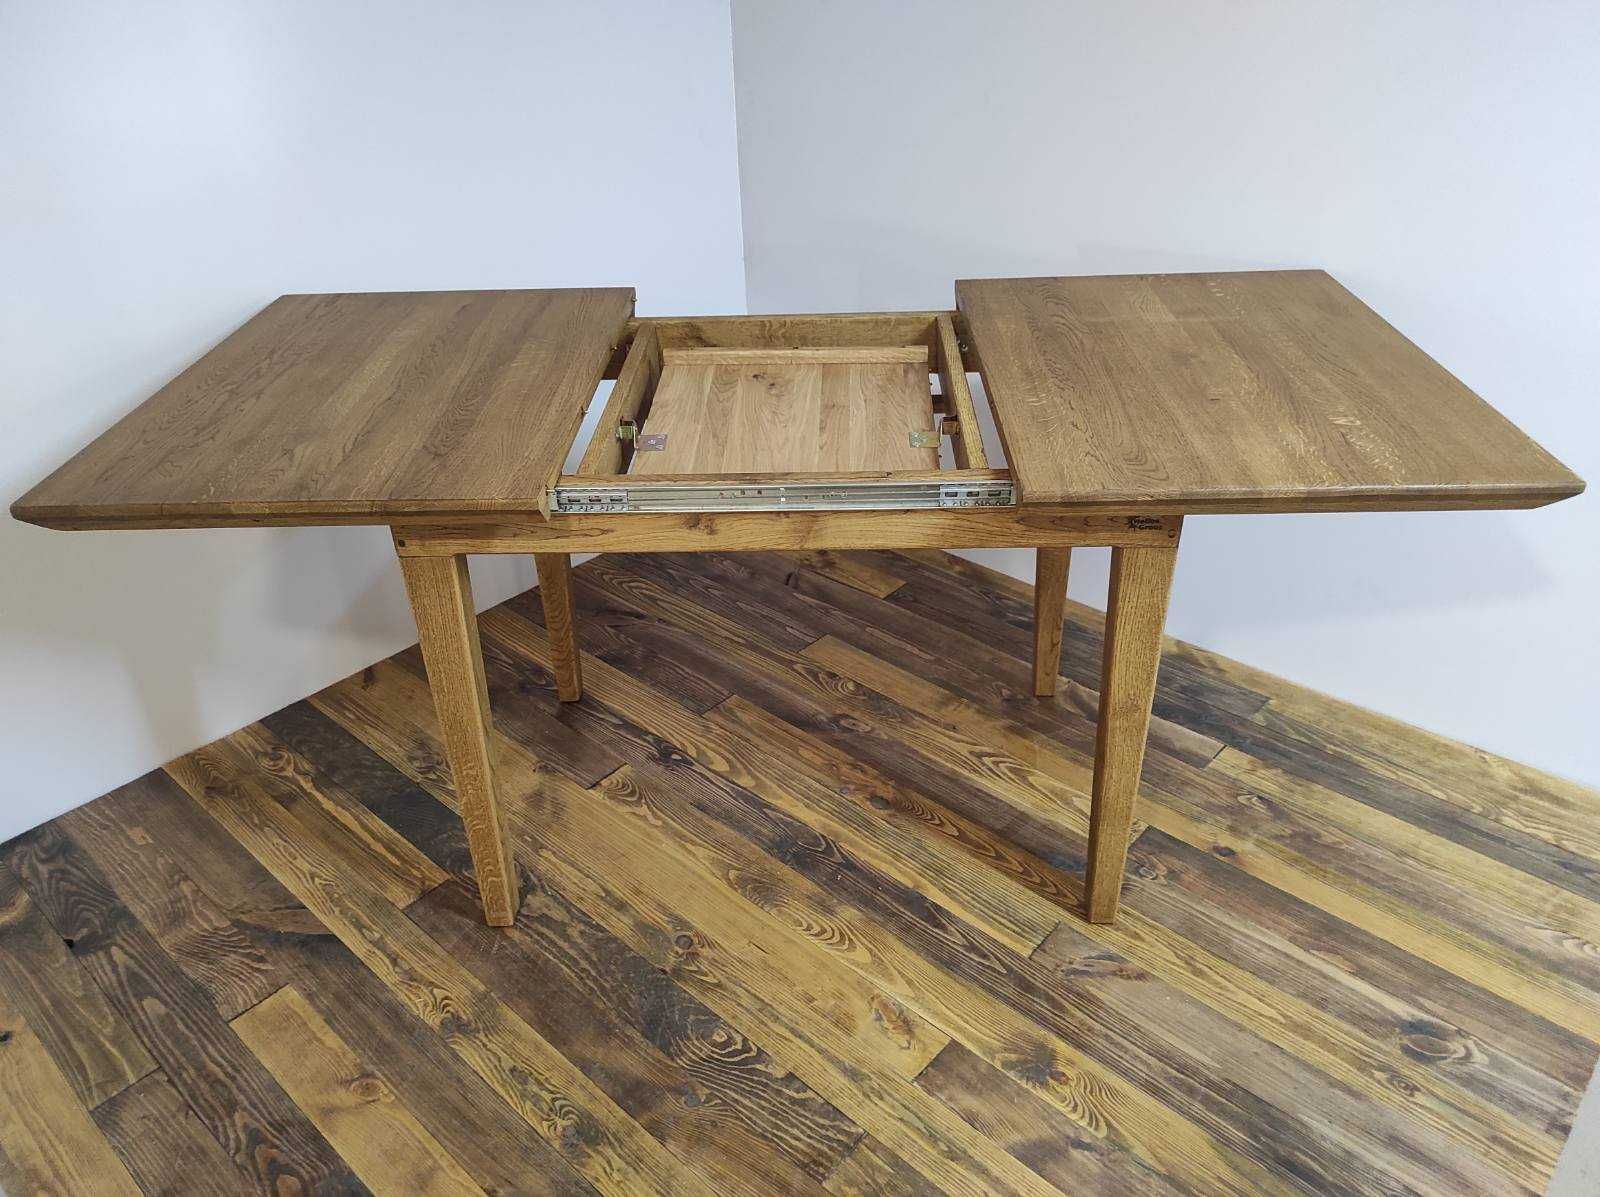 Стіл дерев'яний розкладний дуб /деревянный стол раздвижной